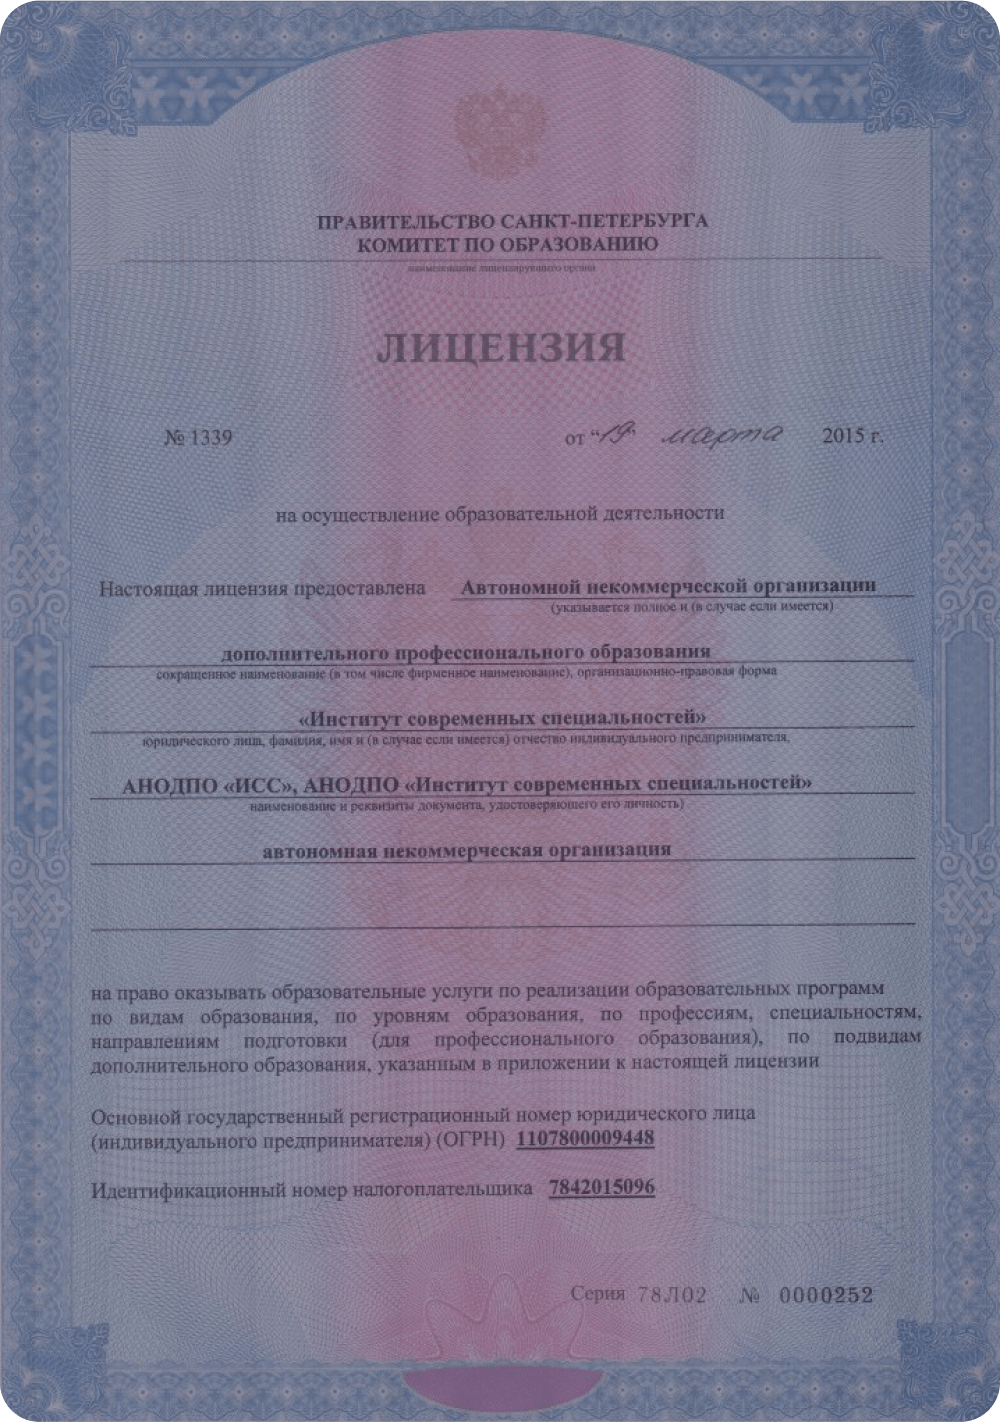 Являемся аккредитованной образовательной организацией — Лицензия от 15.04.2015 Серия 78Л02, № 0000252